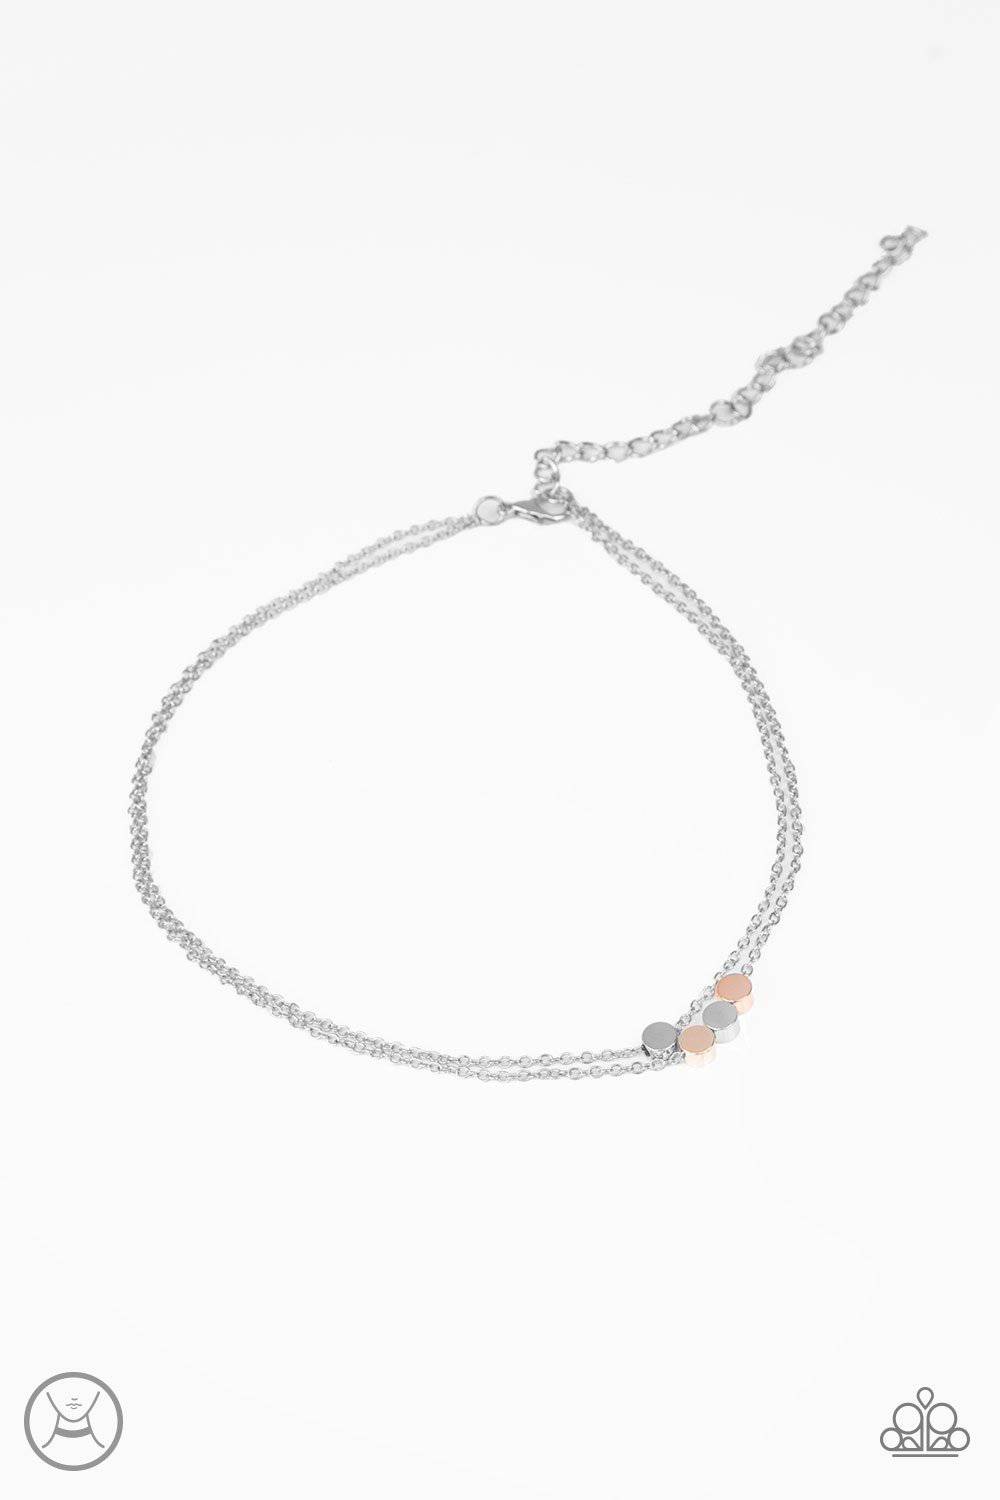 Mini Minimalist - Silver Choker - Paparazzi Accessories - GlaMarous Titi Jewels